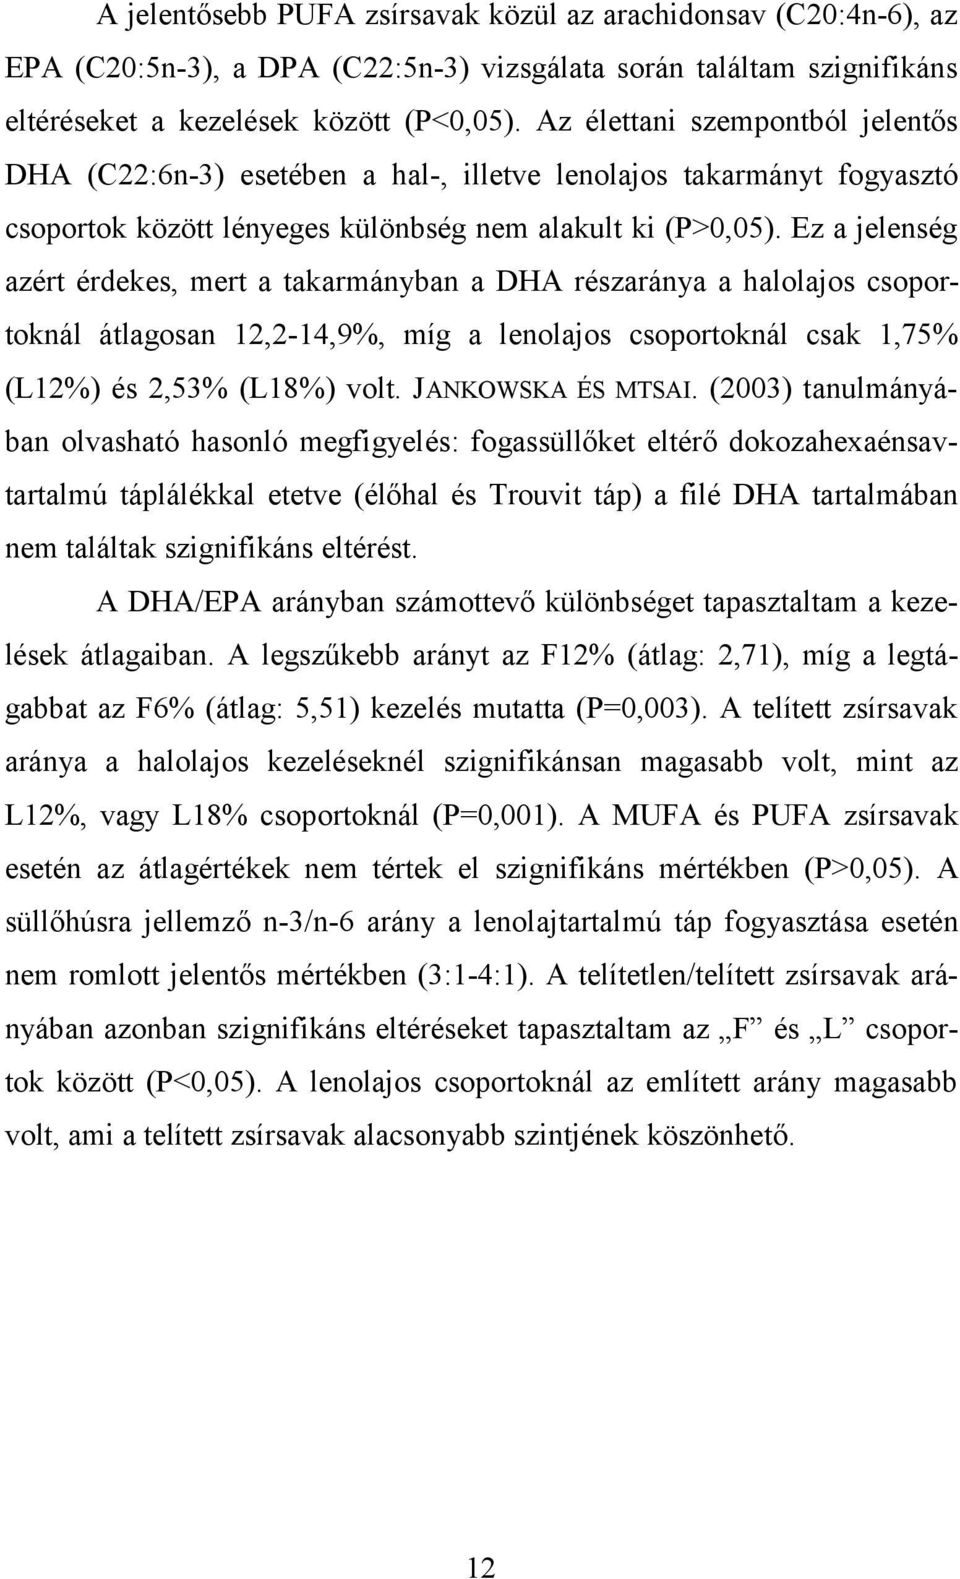 Ez a jelenség azért érdekes, mert a takarmányban a DHA részaránya a halolajos csoportoknál átlagosan 12,2-14,9%, míg a lenolajos csoportoknál csak 1,75% (L12%) és 2,53% (L18%) volt.